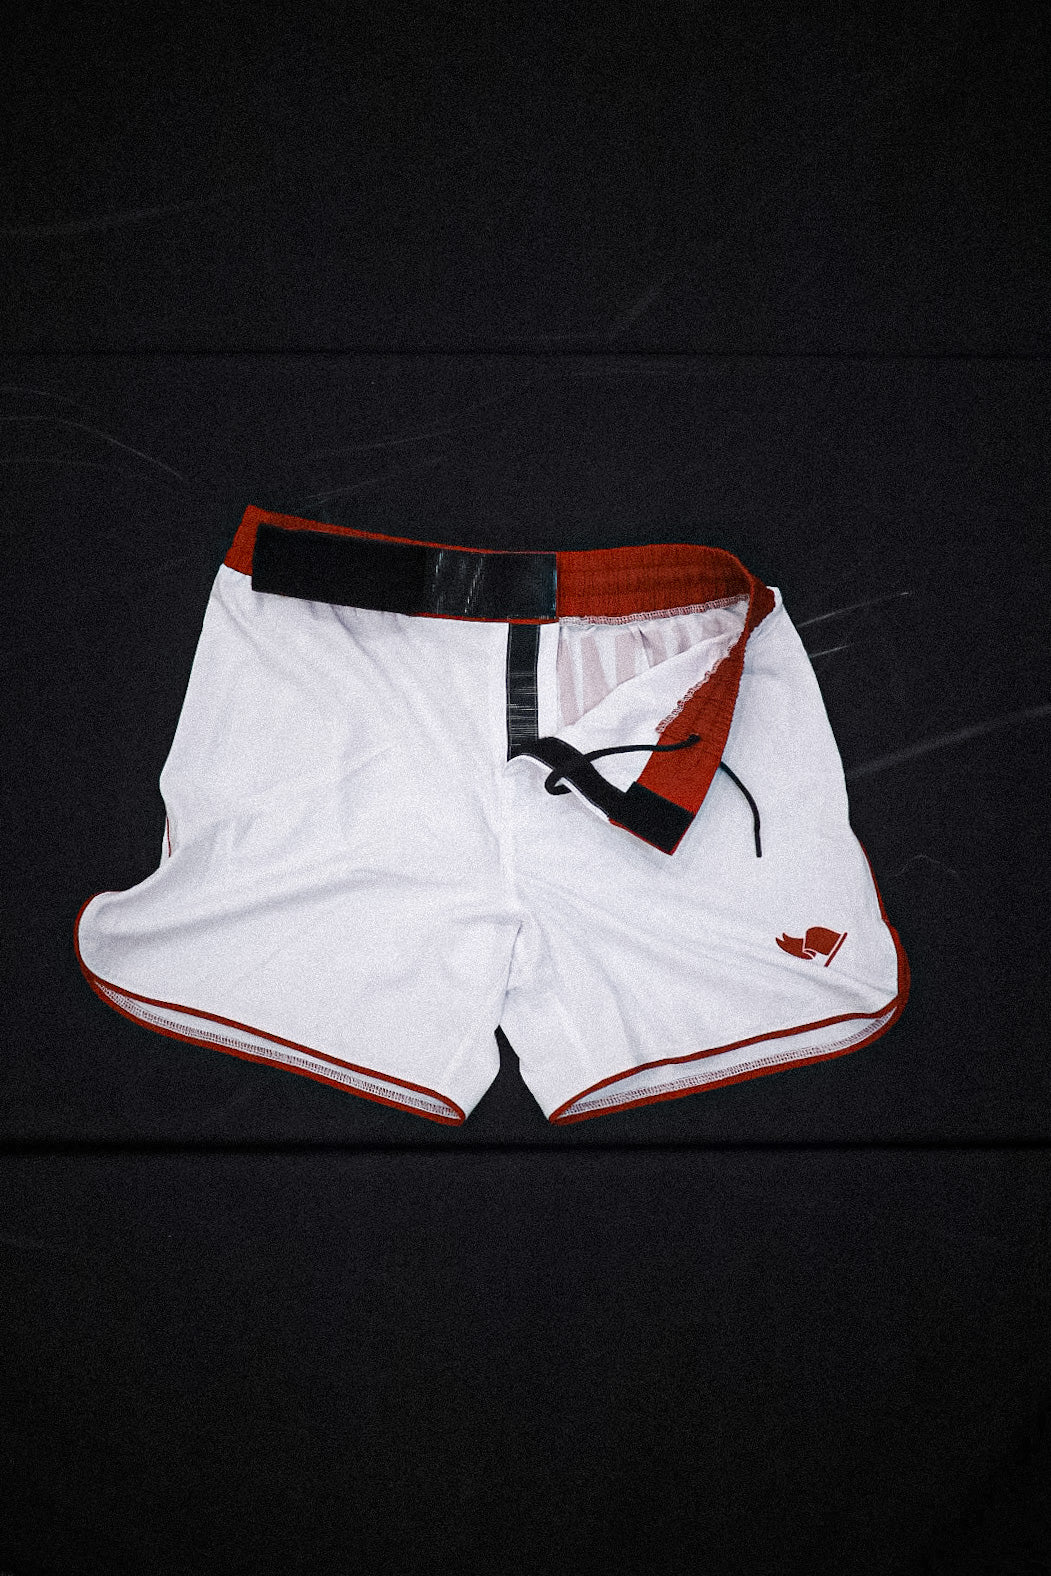 CLASSIC Shorts - Crimson